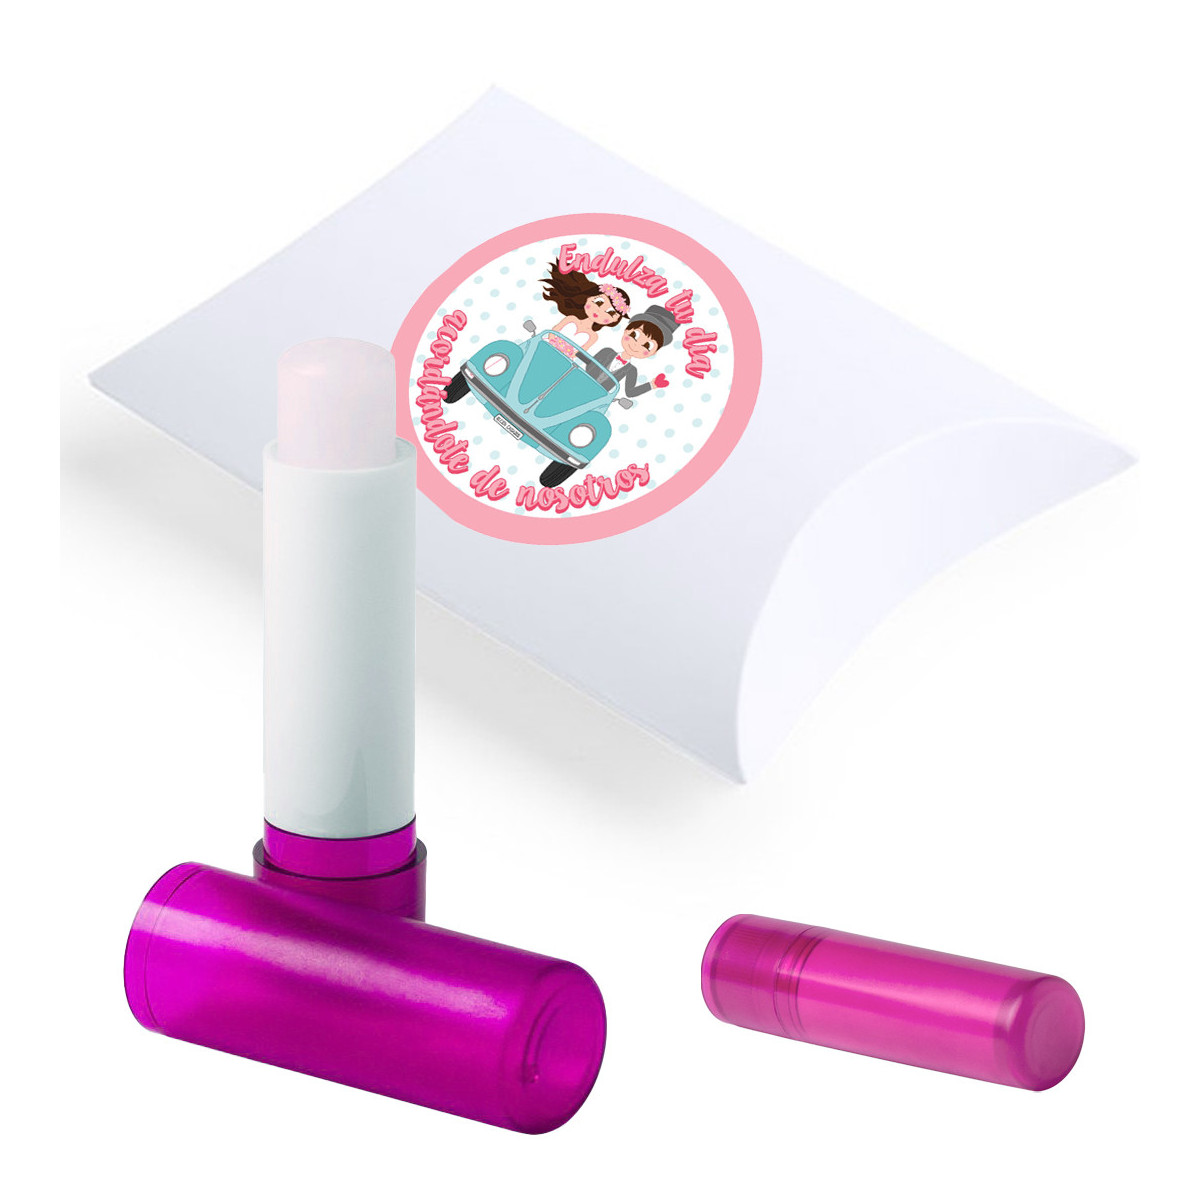 Stick brillant à lèvres présenté dans une boîte avec un autocollant de mariage